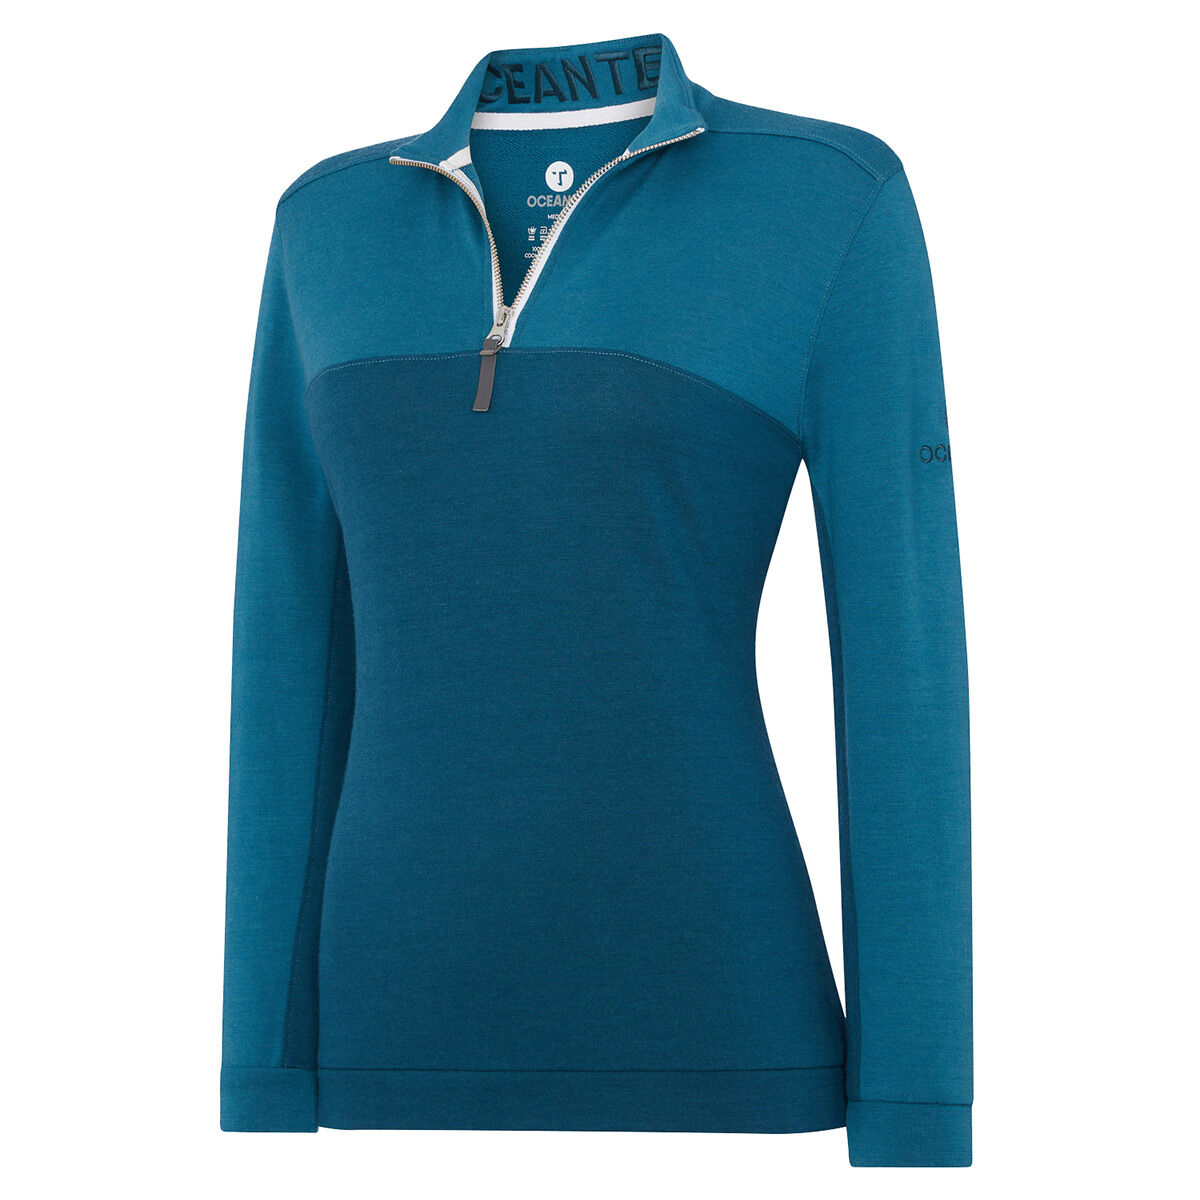 Vêtement intermédiaire pour femme Manta OCEANTEE, femme, Bleu sarcelle, XS  | Online Golf